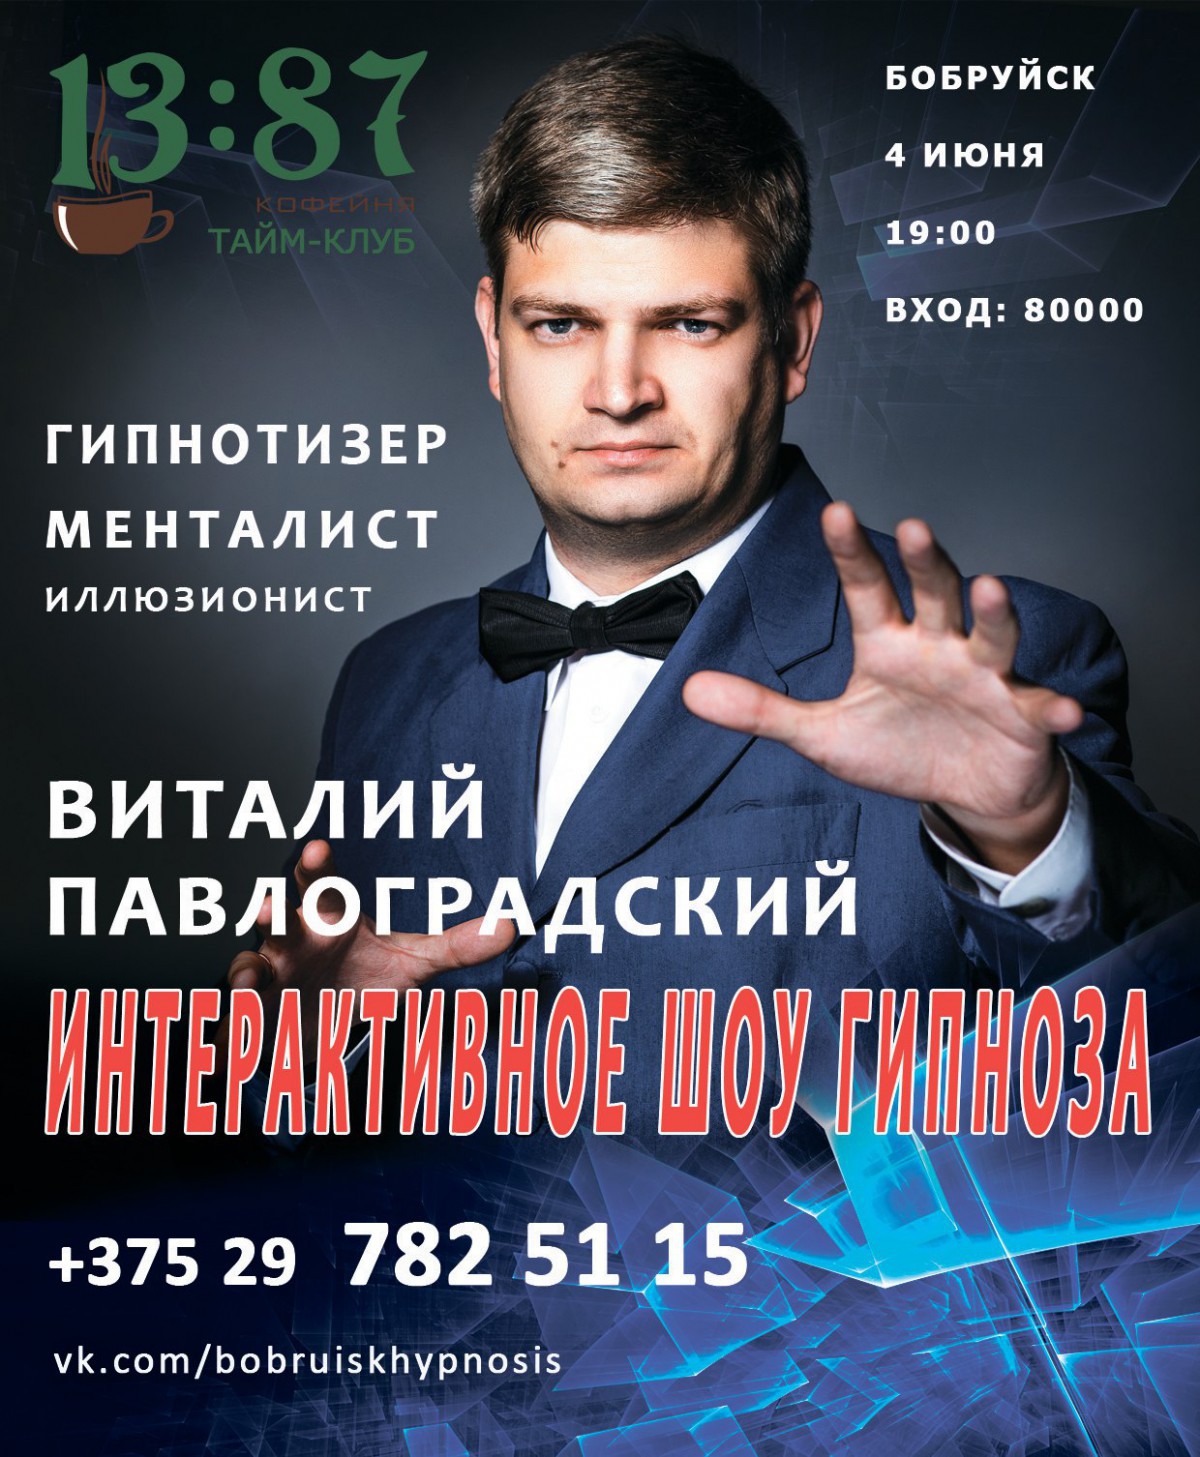 Интерактивное шоу гипноза в Бобруйске